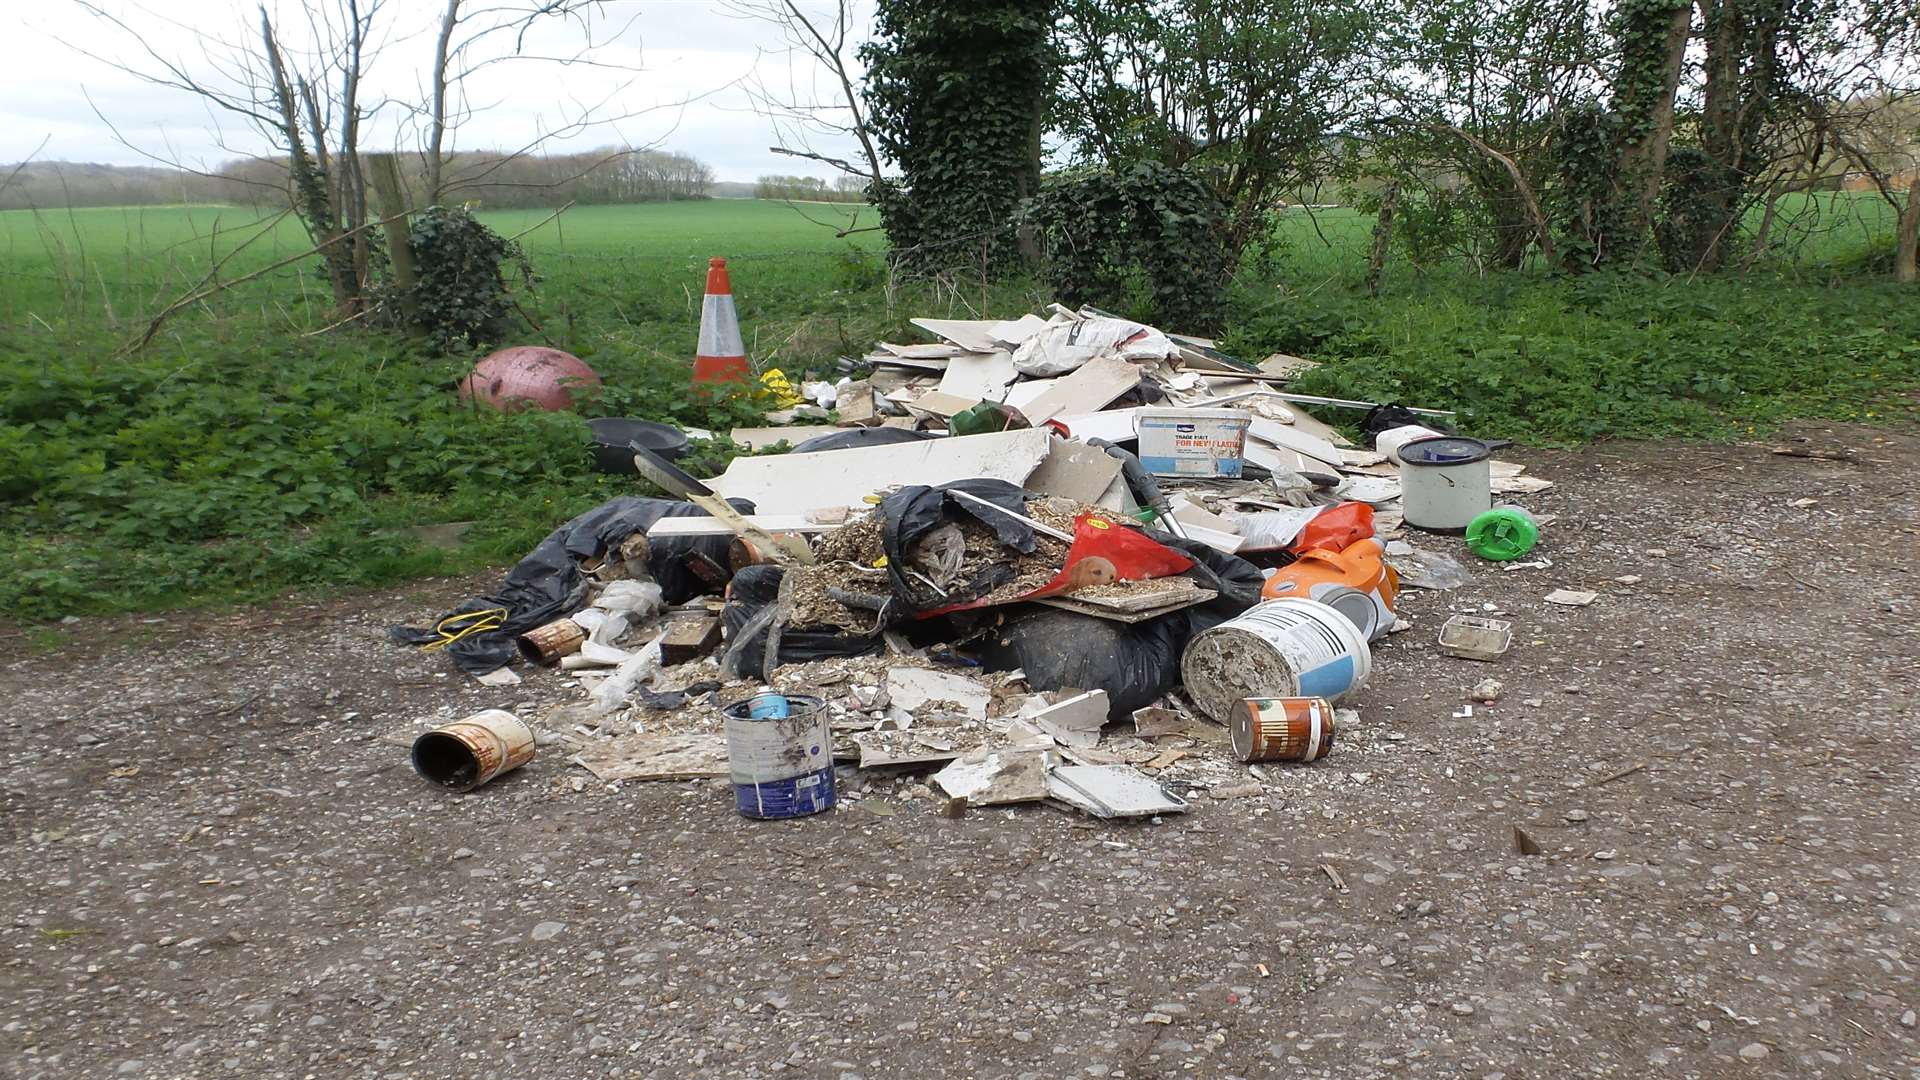 The rubbish pile